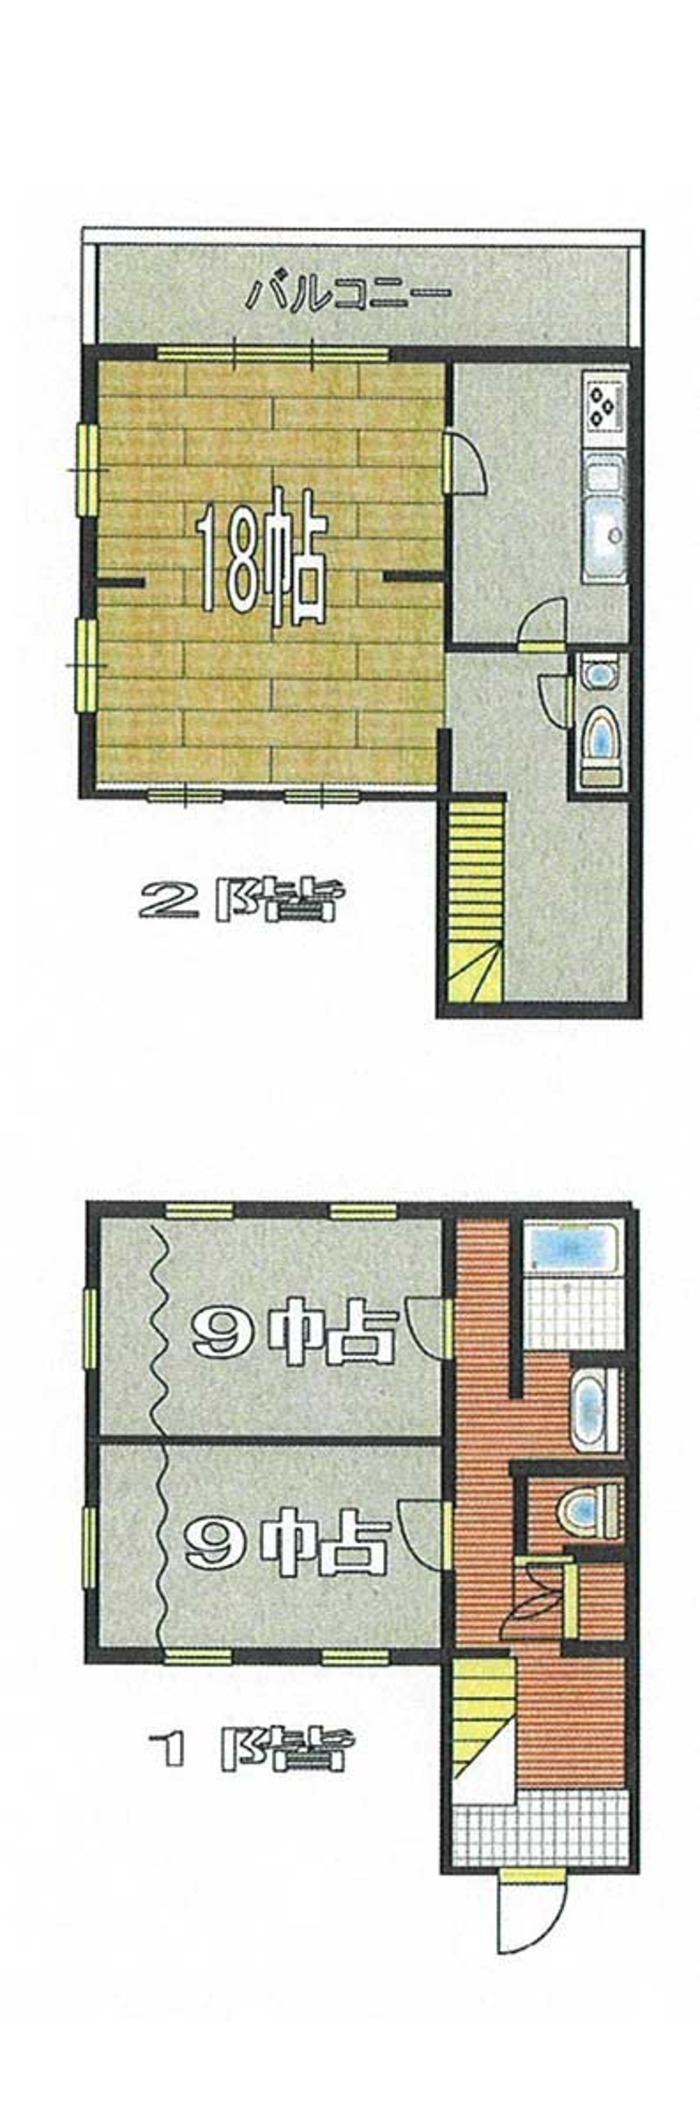 Floor plan. 17.2 million yen, 2LDK, Land area 340 sq m , Building area 121.62 sq m